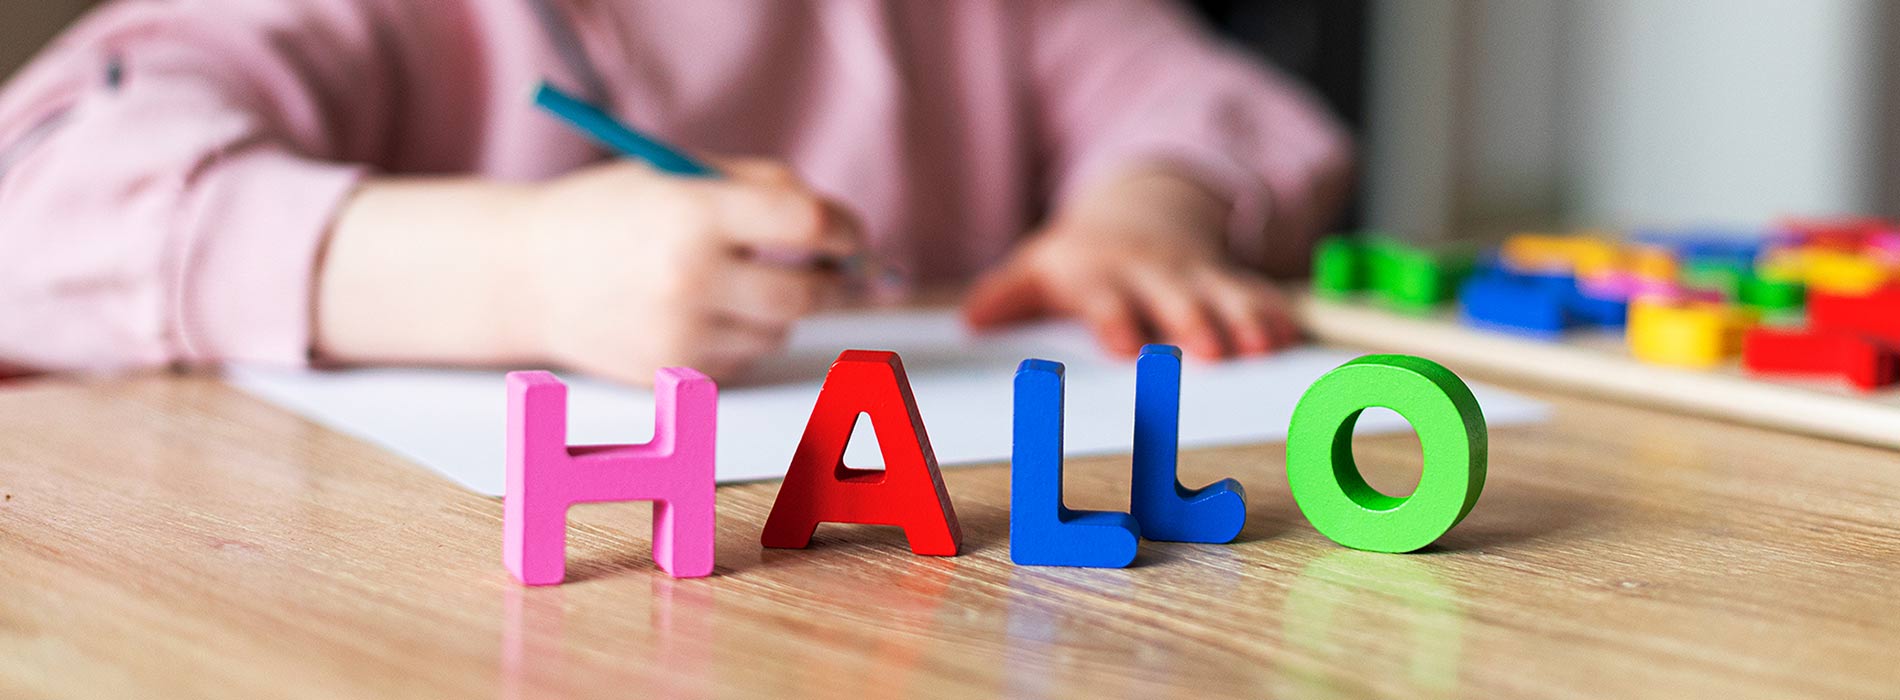 Foto: auf einem Tisch steht das Wort Hallo in bunten Holzbuchstaben und im Hintergrund malt ein kleines Kind mit Buntstift